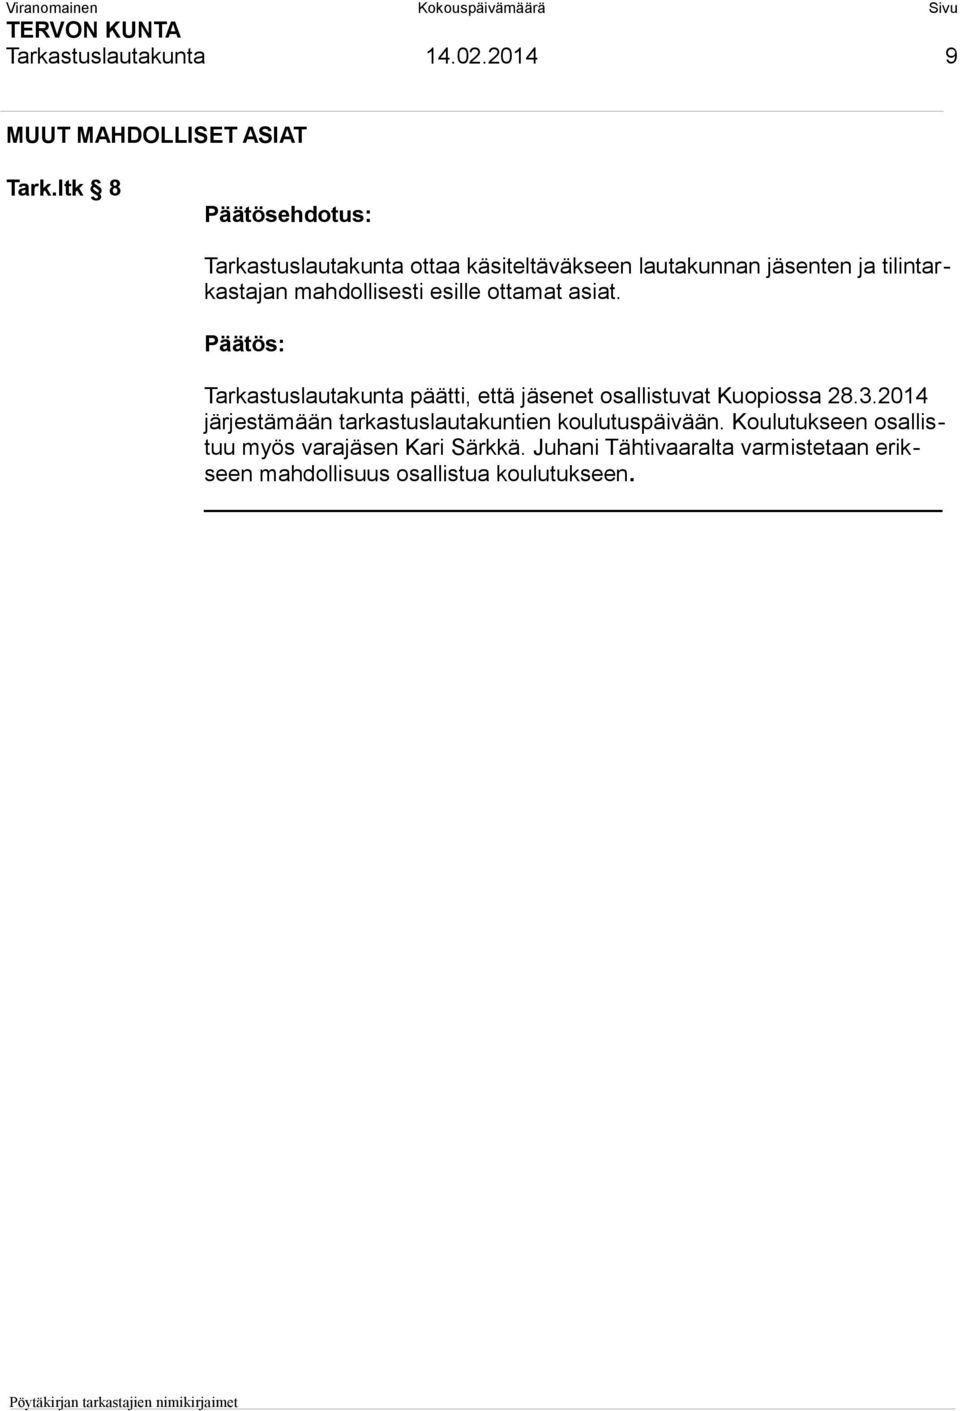 ottamat asiat. Tarkastuslautakunta päätti, että jäsenet osallistuvat Kuopiossa 28.3.